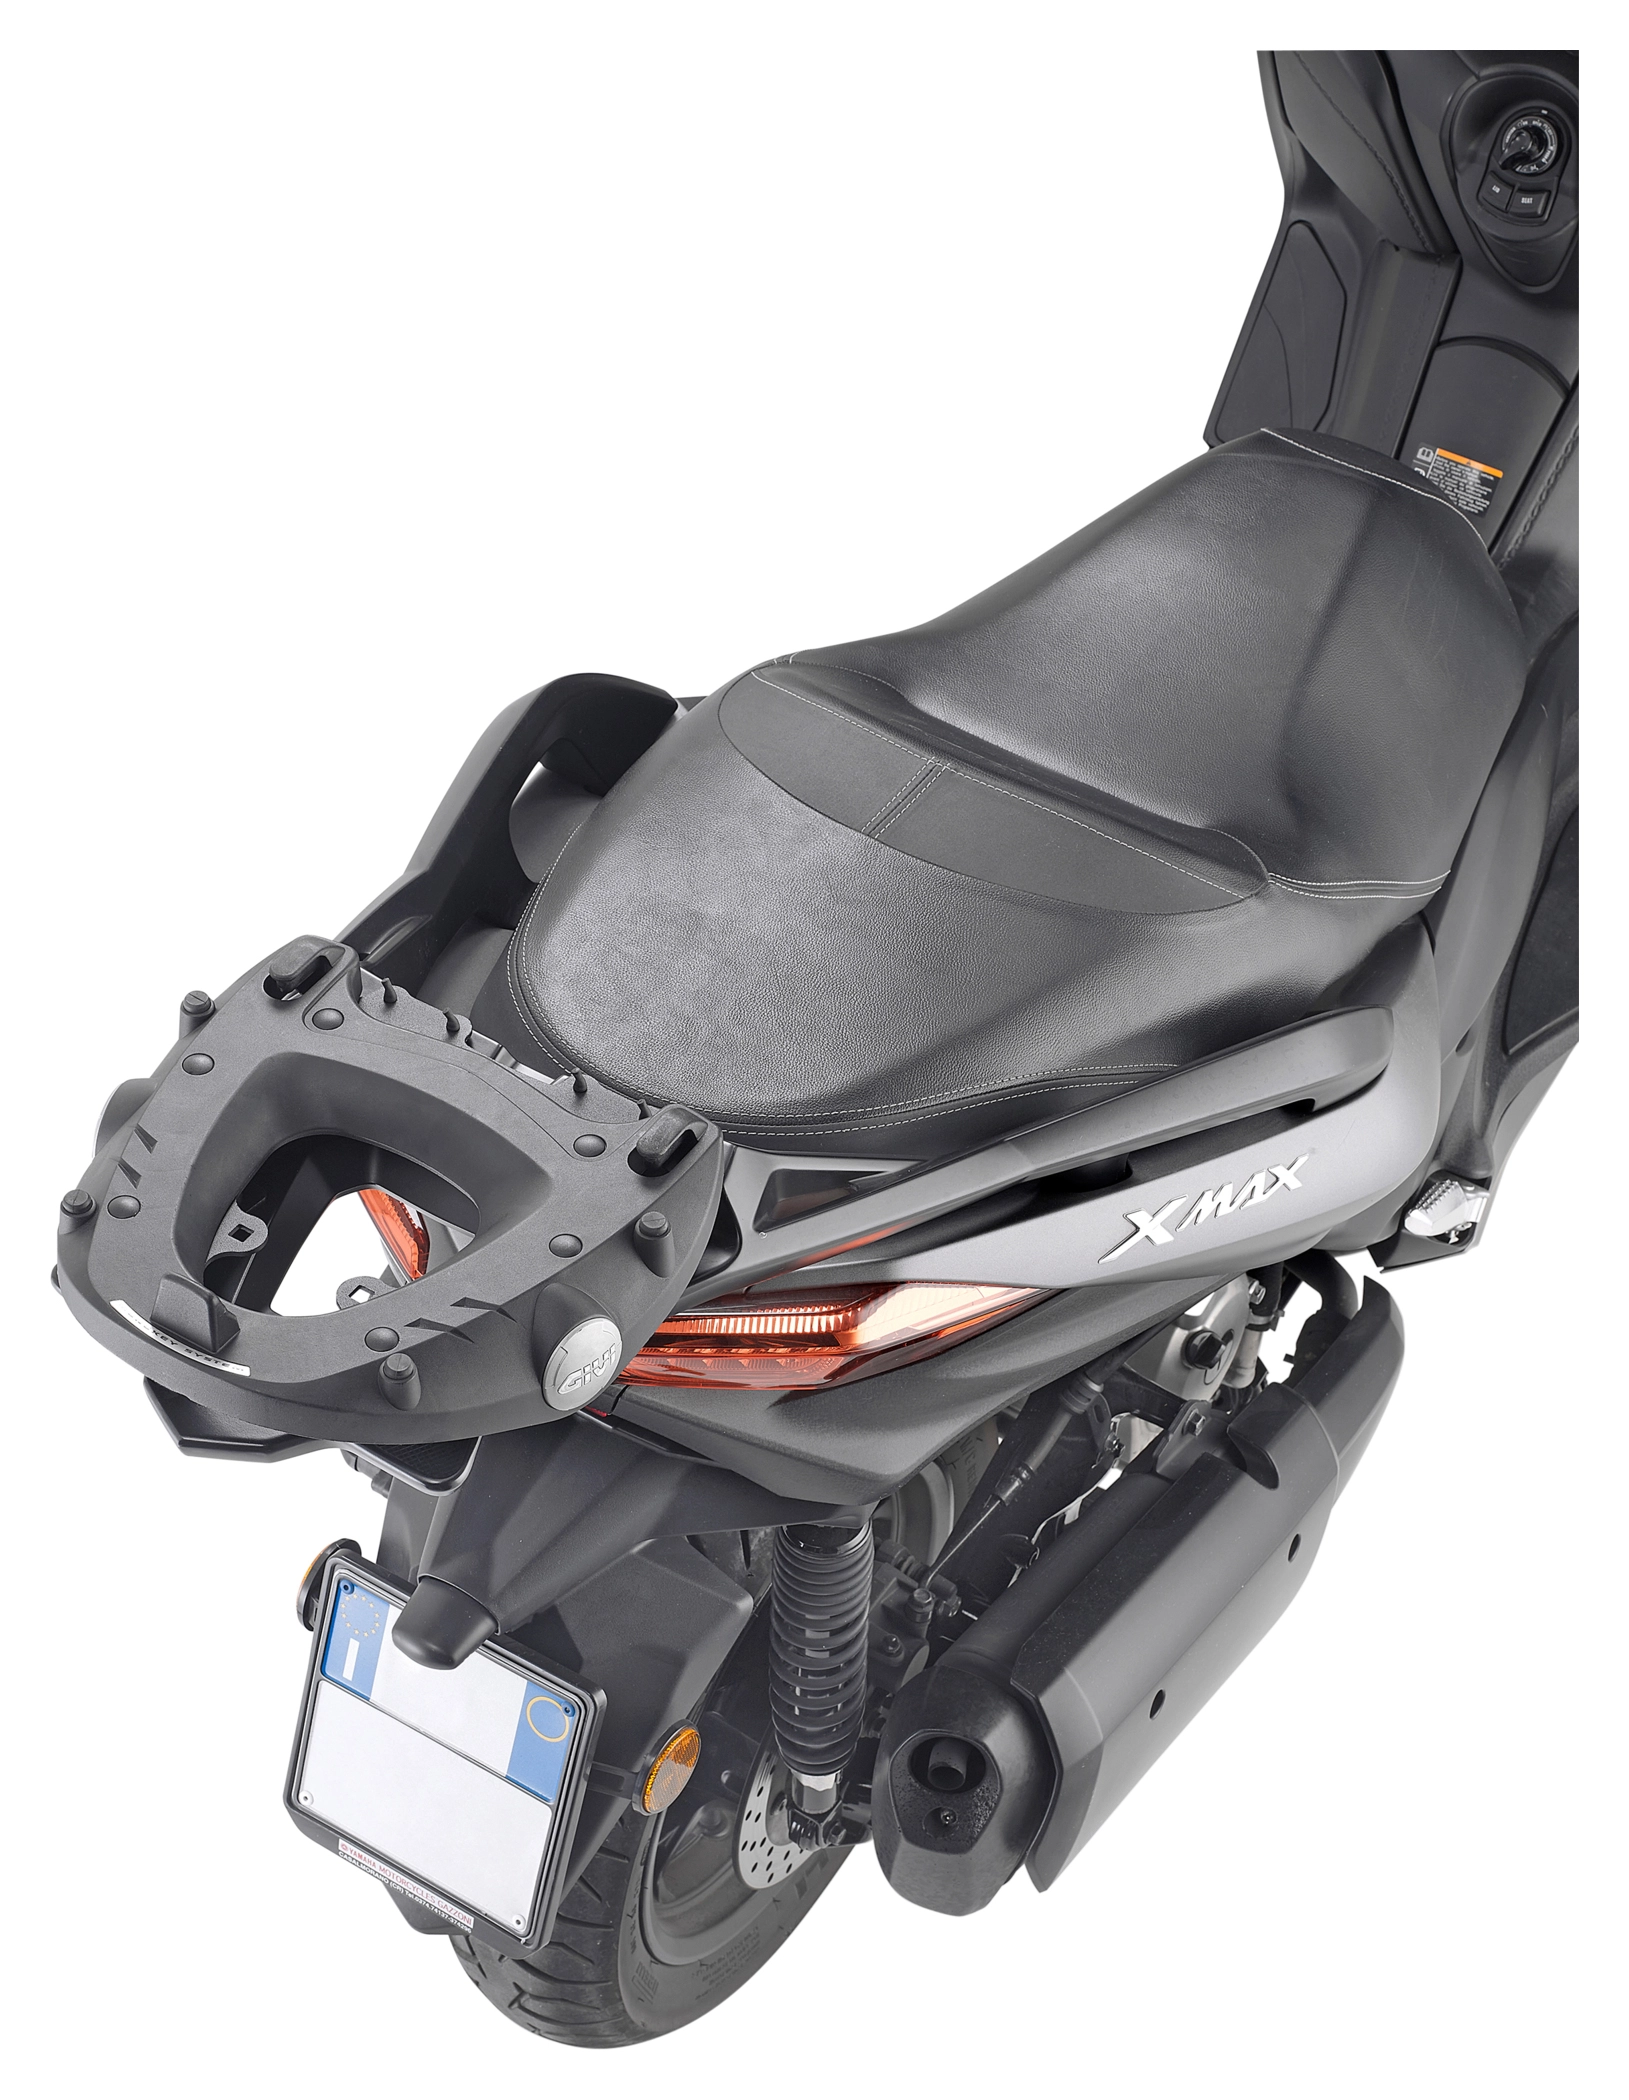 GIVI porte paquet objet bagage supérieur universel S150 pour top case moto  scooter